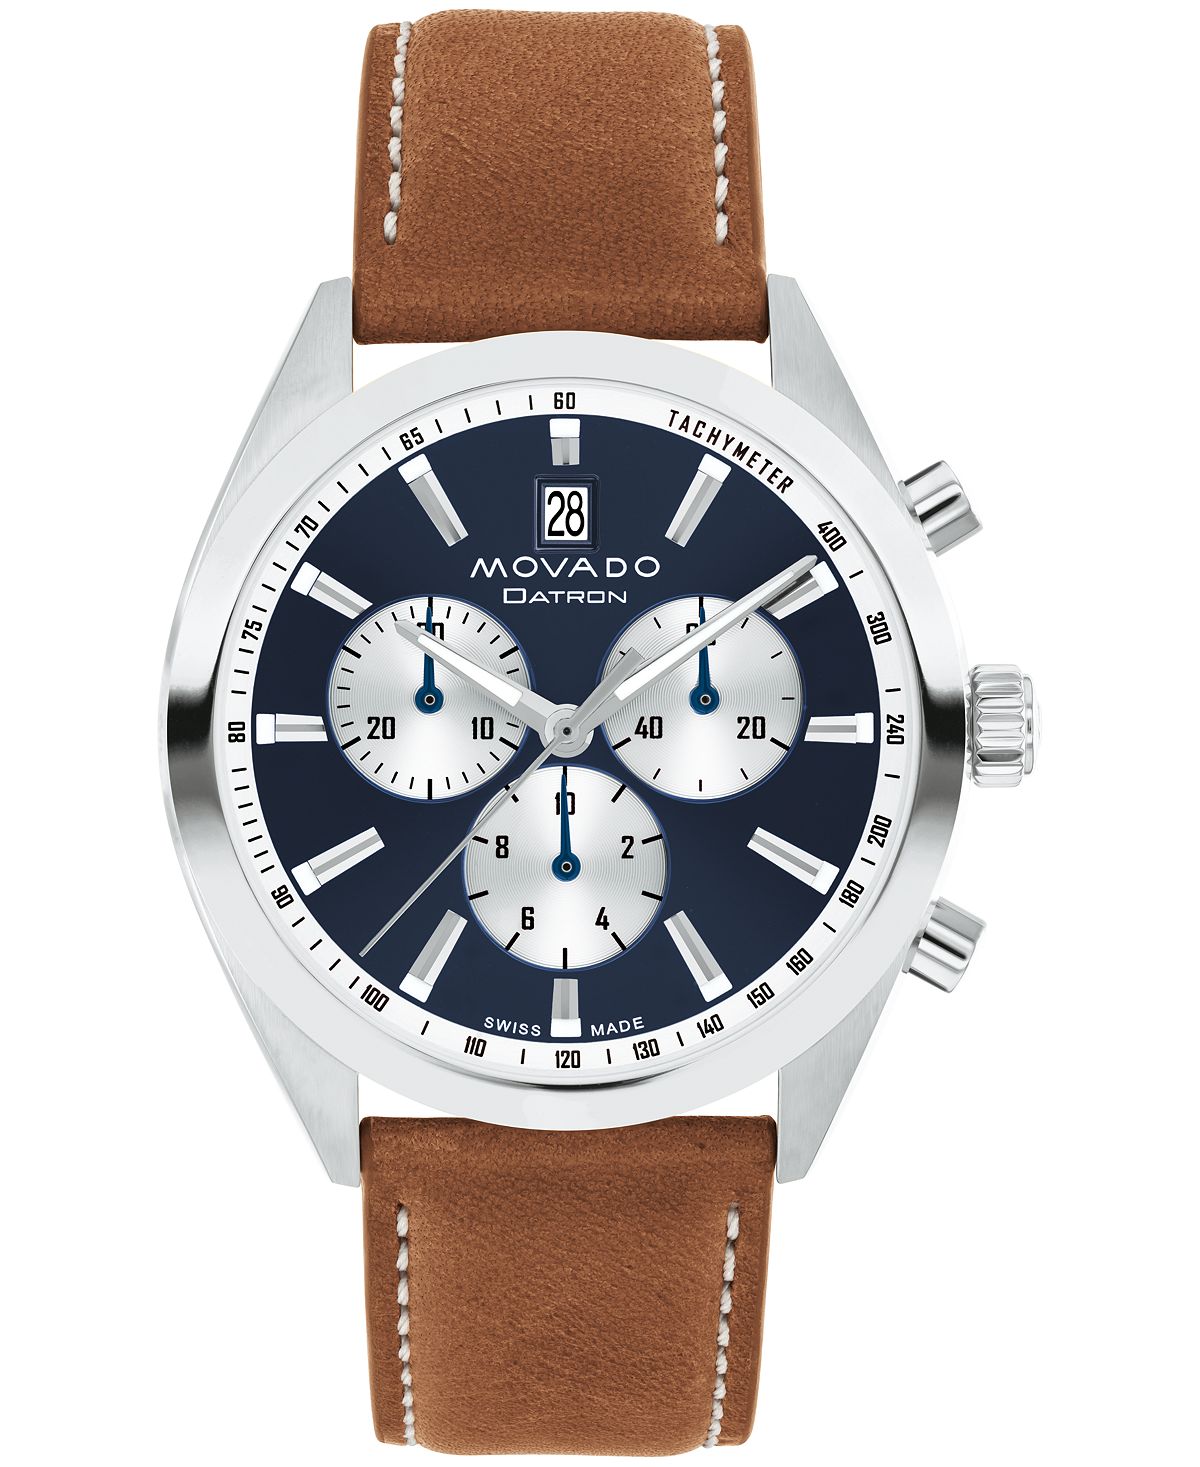 Мужские часы Datron Swiss Quartz Chrono Cognac кожаные 40 мм Movado часы hamilton jazzmaster chrono quartz h32612741